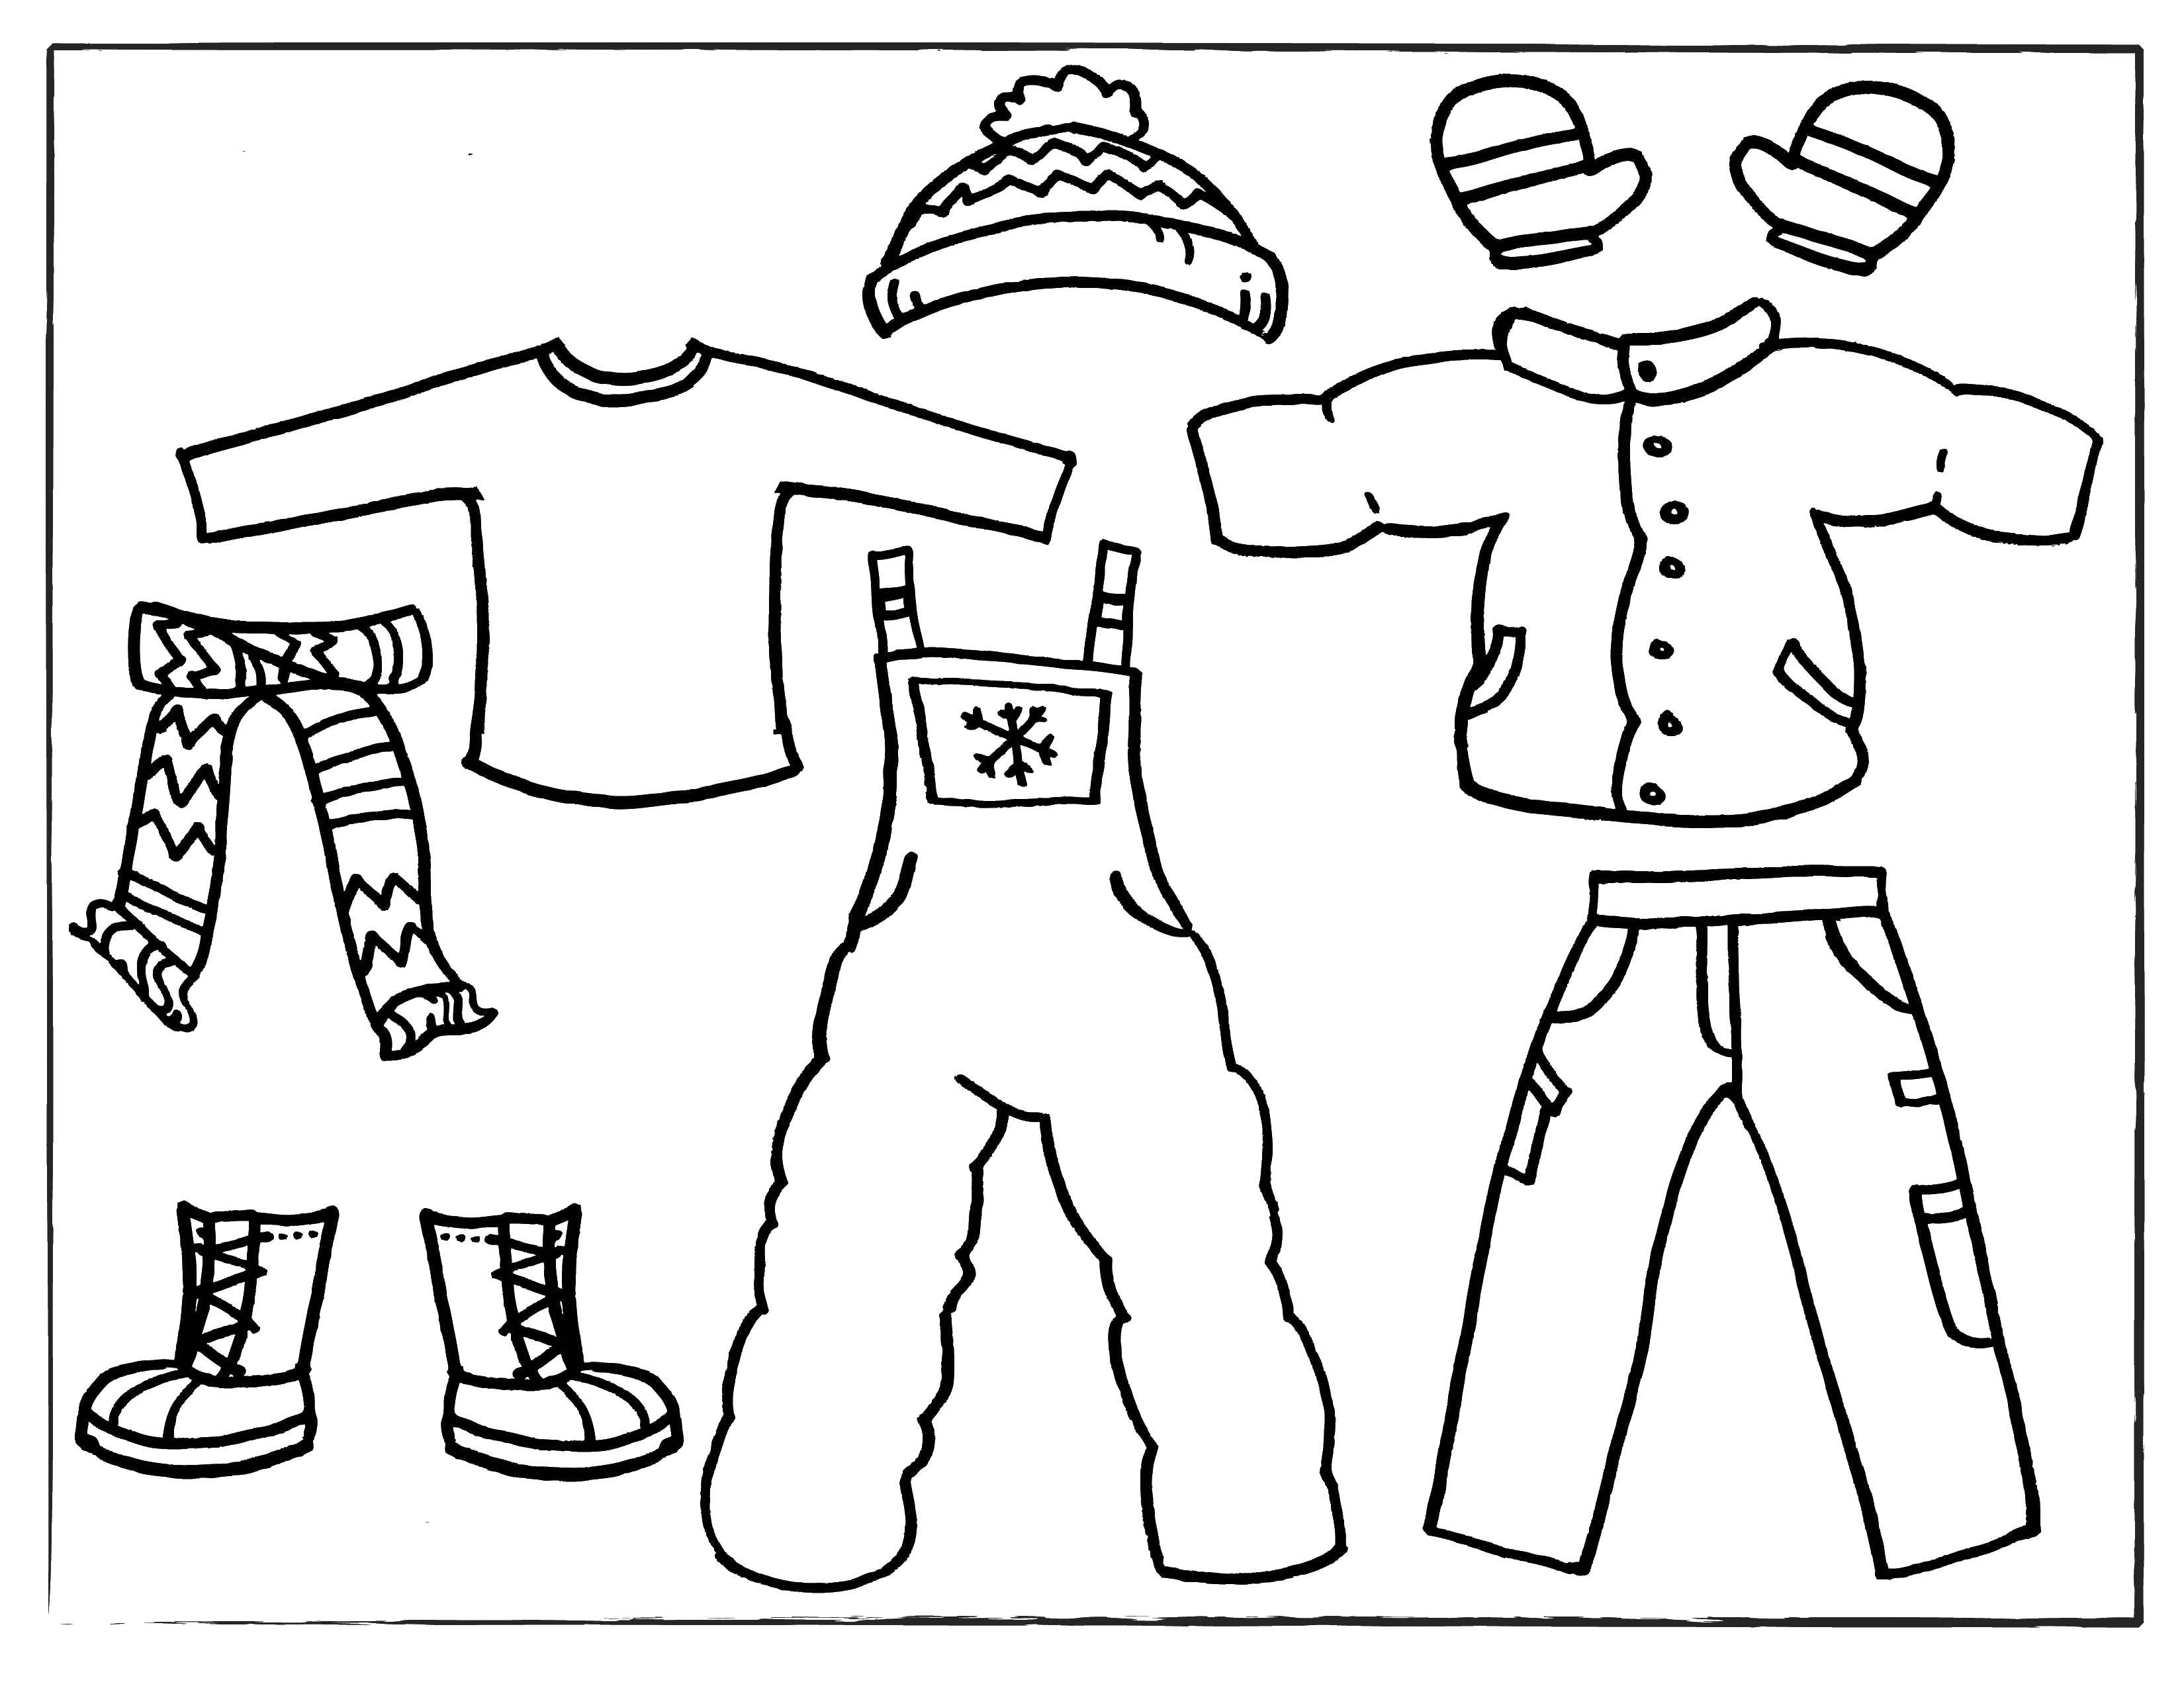 Название: Раскраска Зимняя одежда: шарфик, шапка, ботинки, варежки, куртка, комбинезон, штаны. Категория: одежда. Теги: зимняя одежда, шарф, шапка, ботинки, варежки, куртка, комбинезон, штаны.